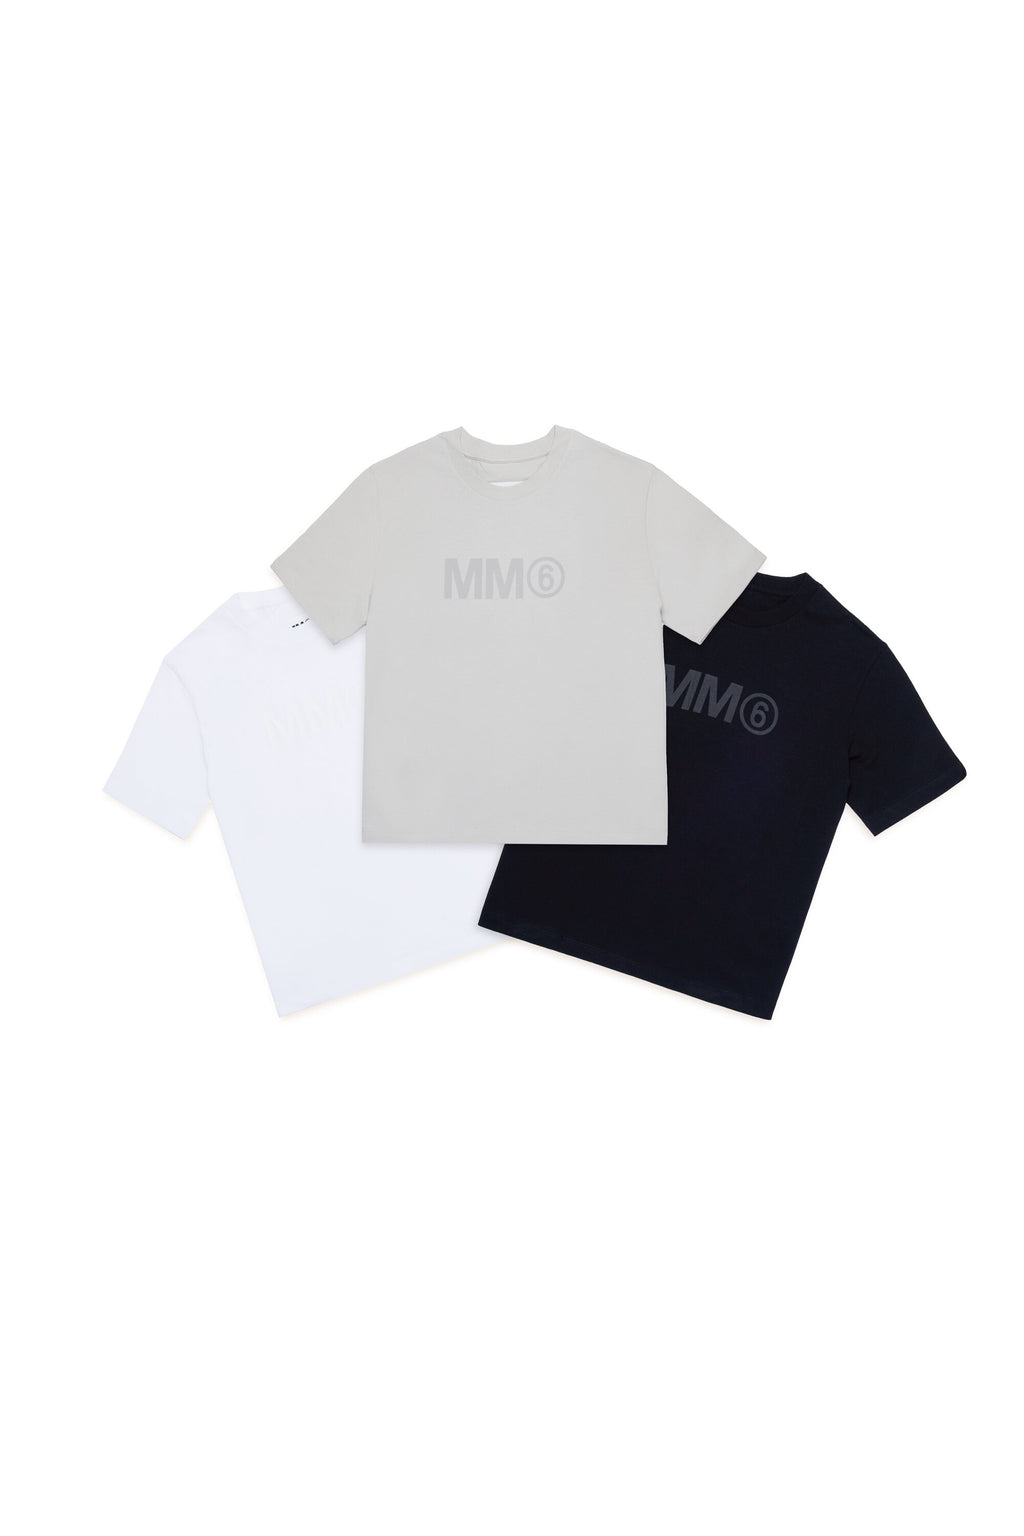 Camiseta con la marca MM6 - Conjunto de 3 piezas